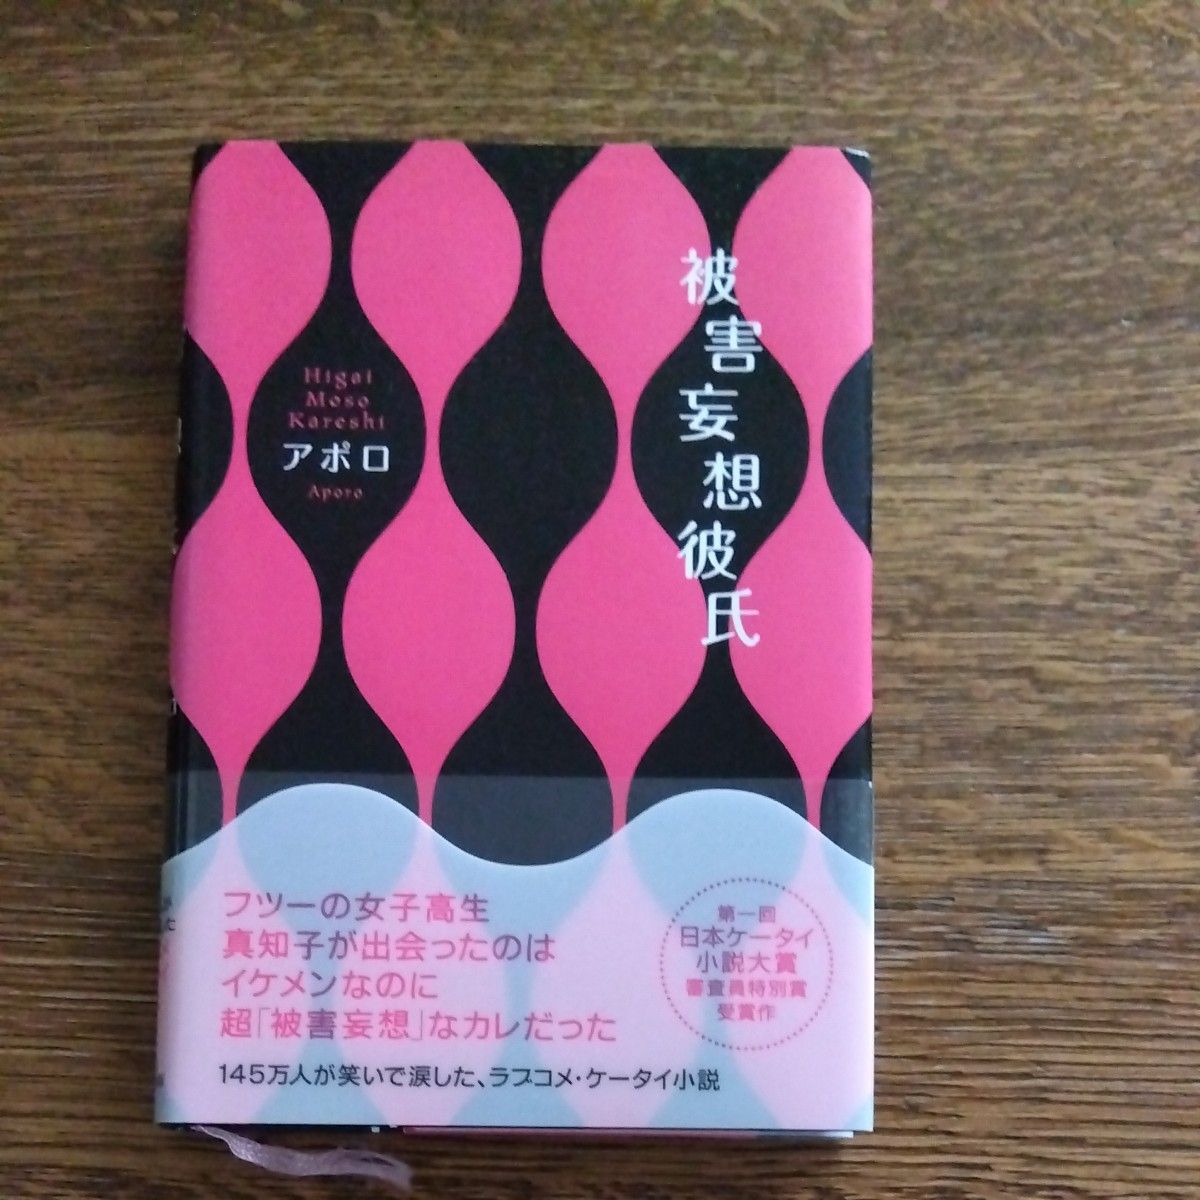 『被害妄想彼氏 』『ヤンキー女→清楚女逆高校デビュー 』２冊セット